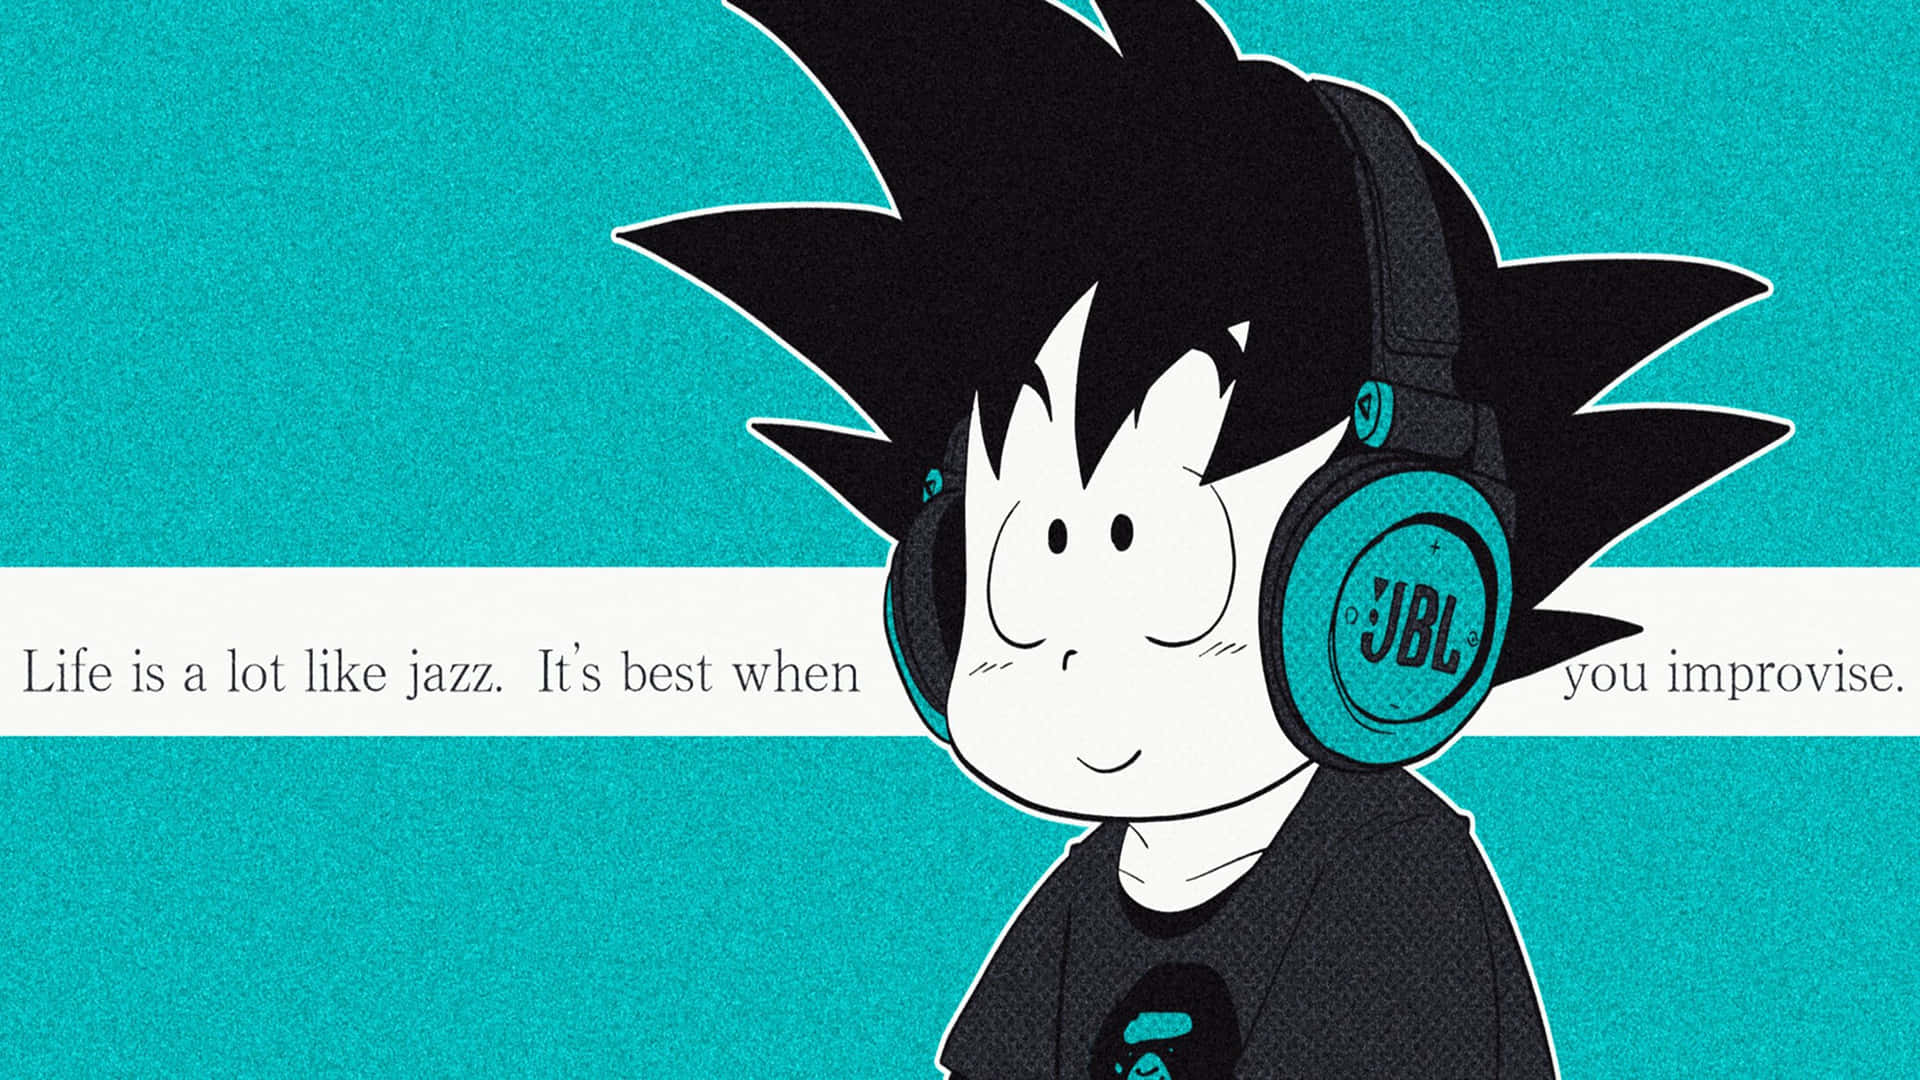 Kid Goku Jbl Headphones With Jazz Quote Wallpaper